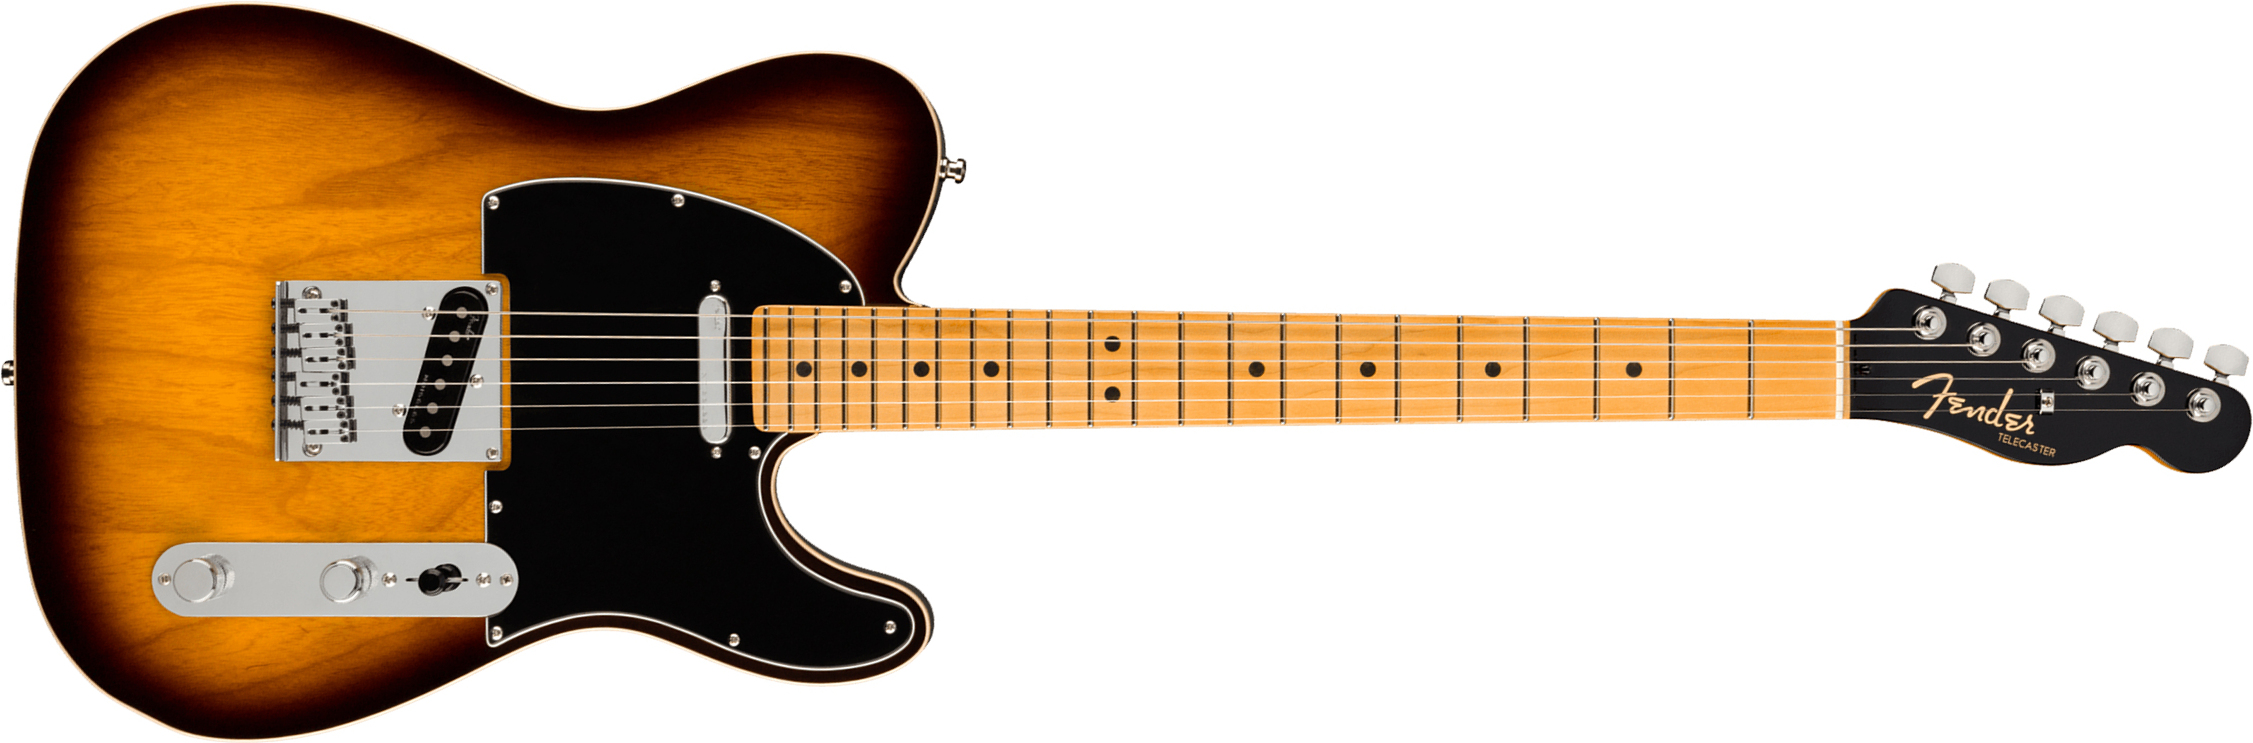 Fender Tele American Ultra Luxe Usa Mn +etui - 2-color Sunburst - Guitarra eléctrica con forma de tel - Main picture